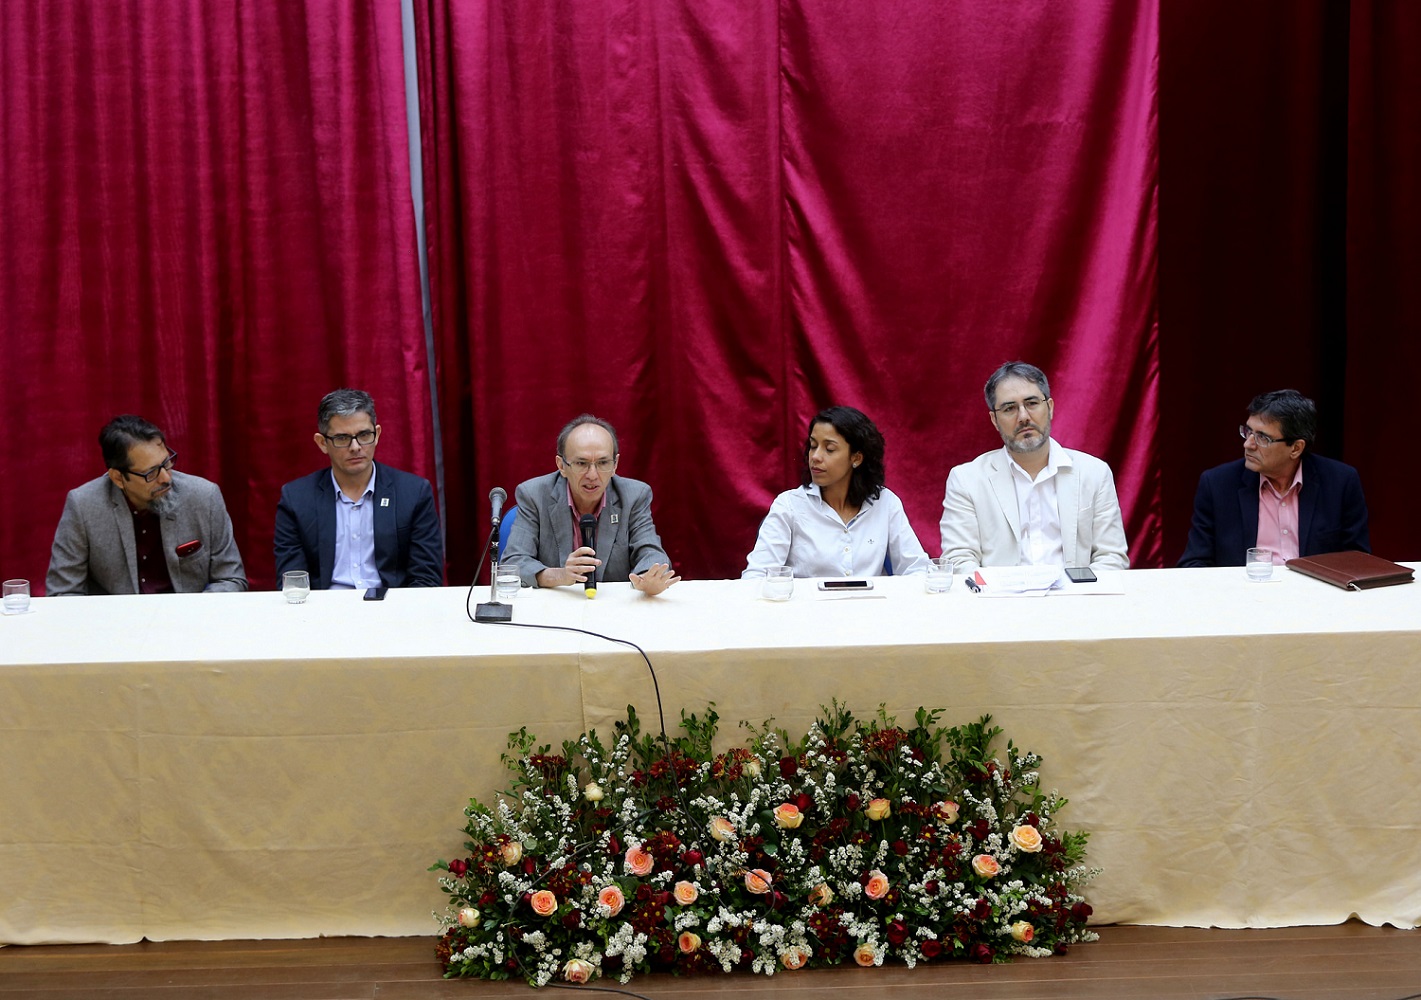 Esta etapa, aliada aos resultados obtidos na primeira prova, irão definir os 19 selecionados para o cargo de Gestor Público do estado de Sergipe